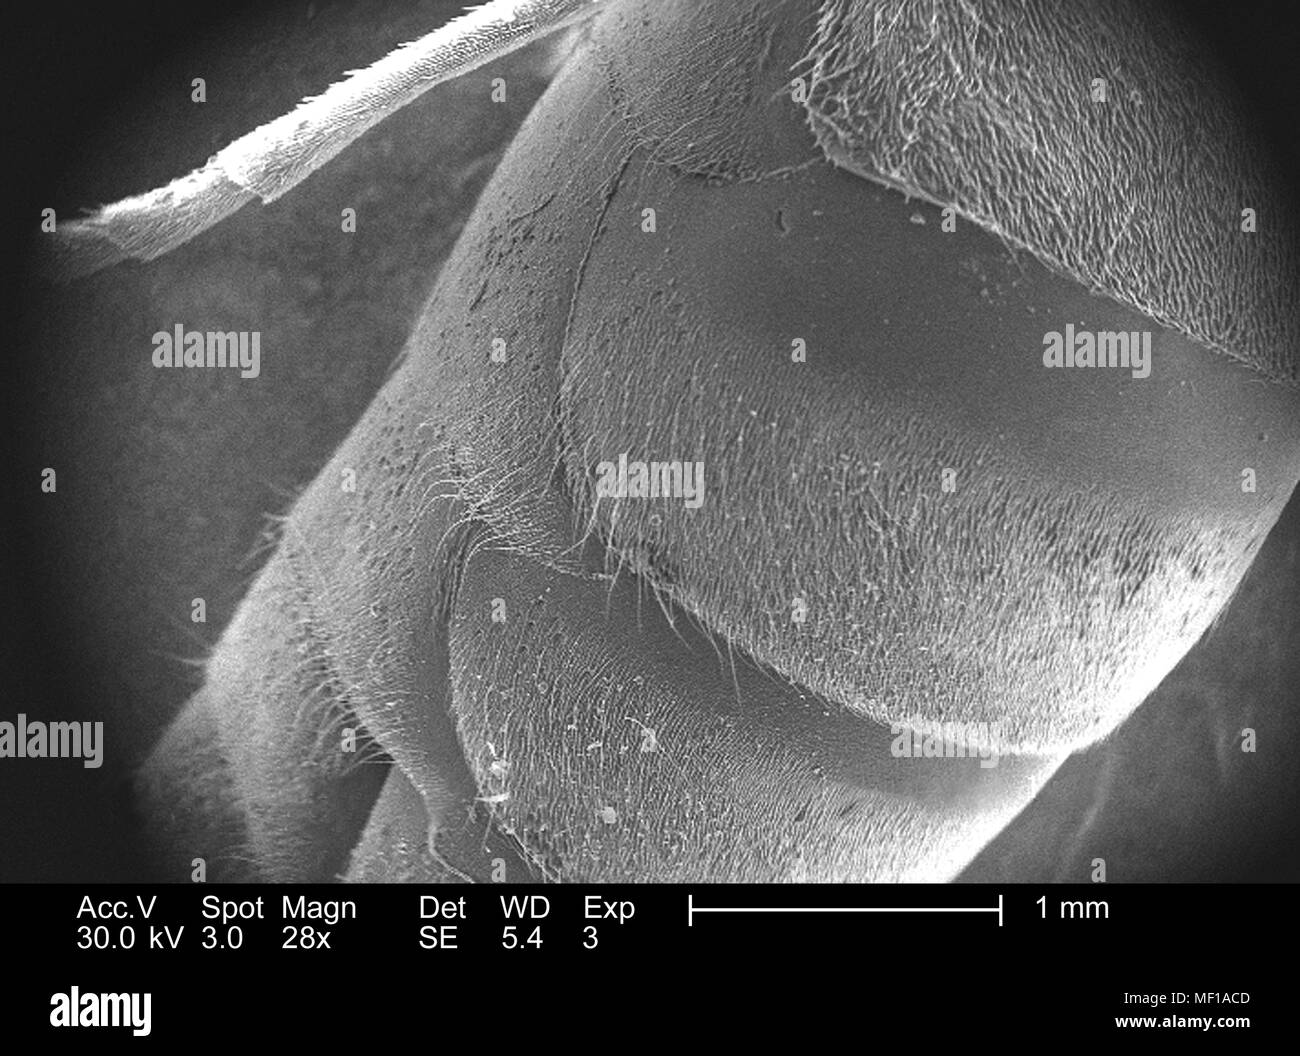 Dettagli morfologiche di un non identificato insetto hymenopteran trovati in Decatur, Georgia, raffigurato in 28x di scansione ingrandita al microscopio elettronico (SEM) immagine, 2005. Immagine cortesia di centri per il controllo delle malattie (CDC) / Janice Haney Carr. () Foto Stock